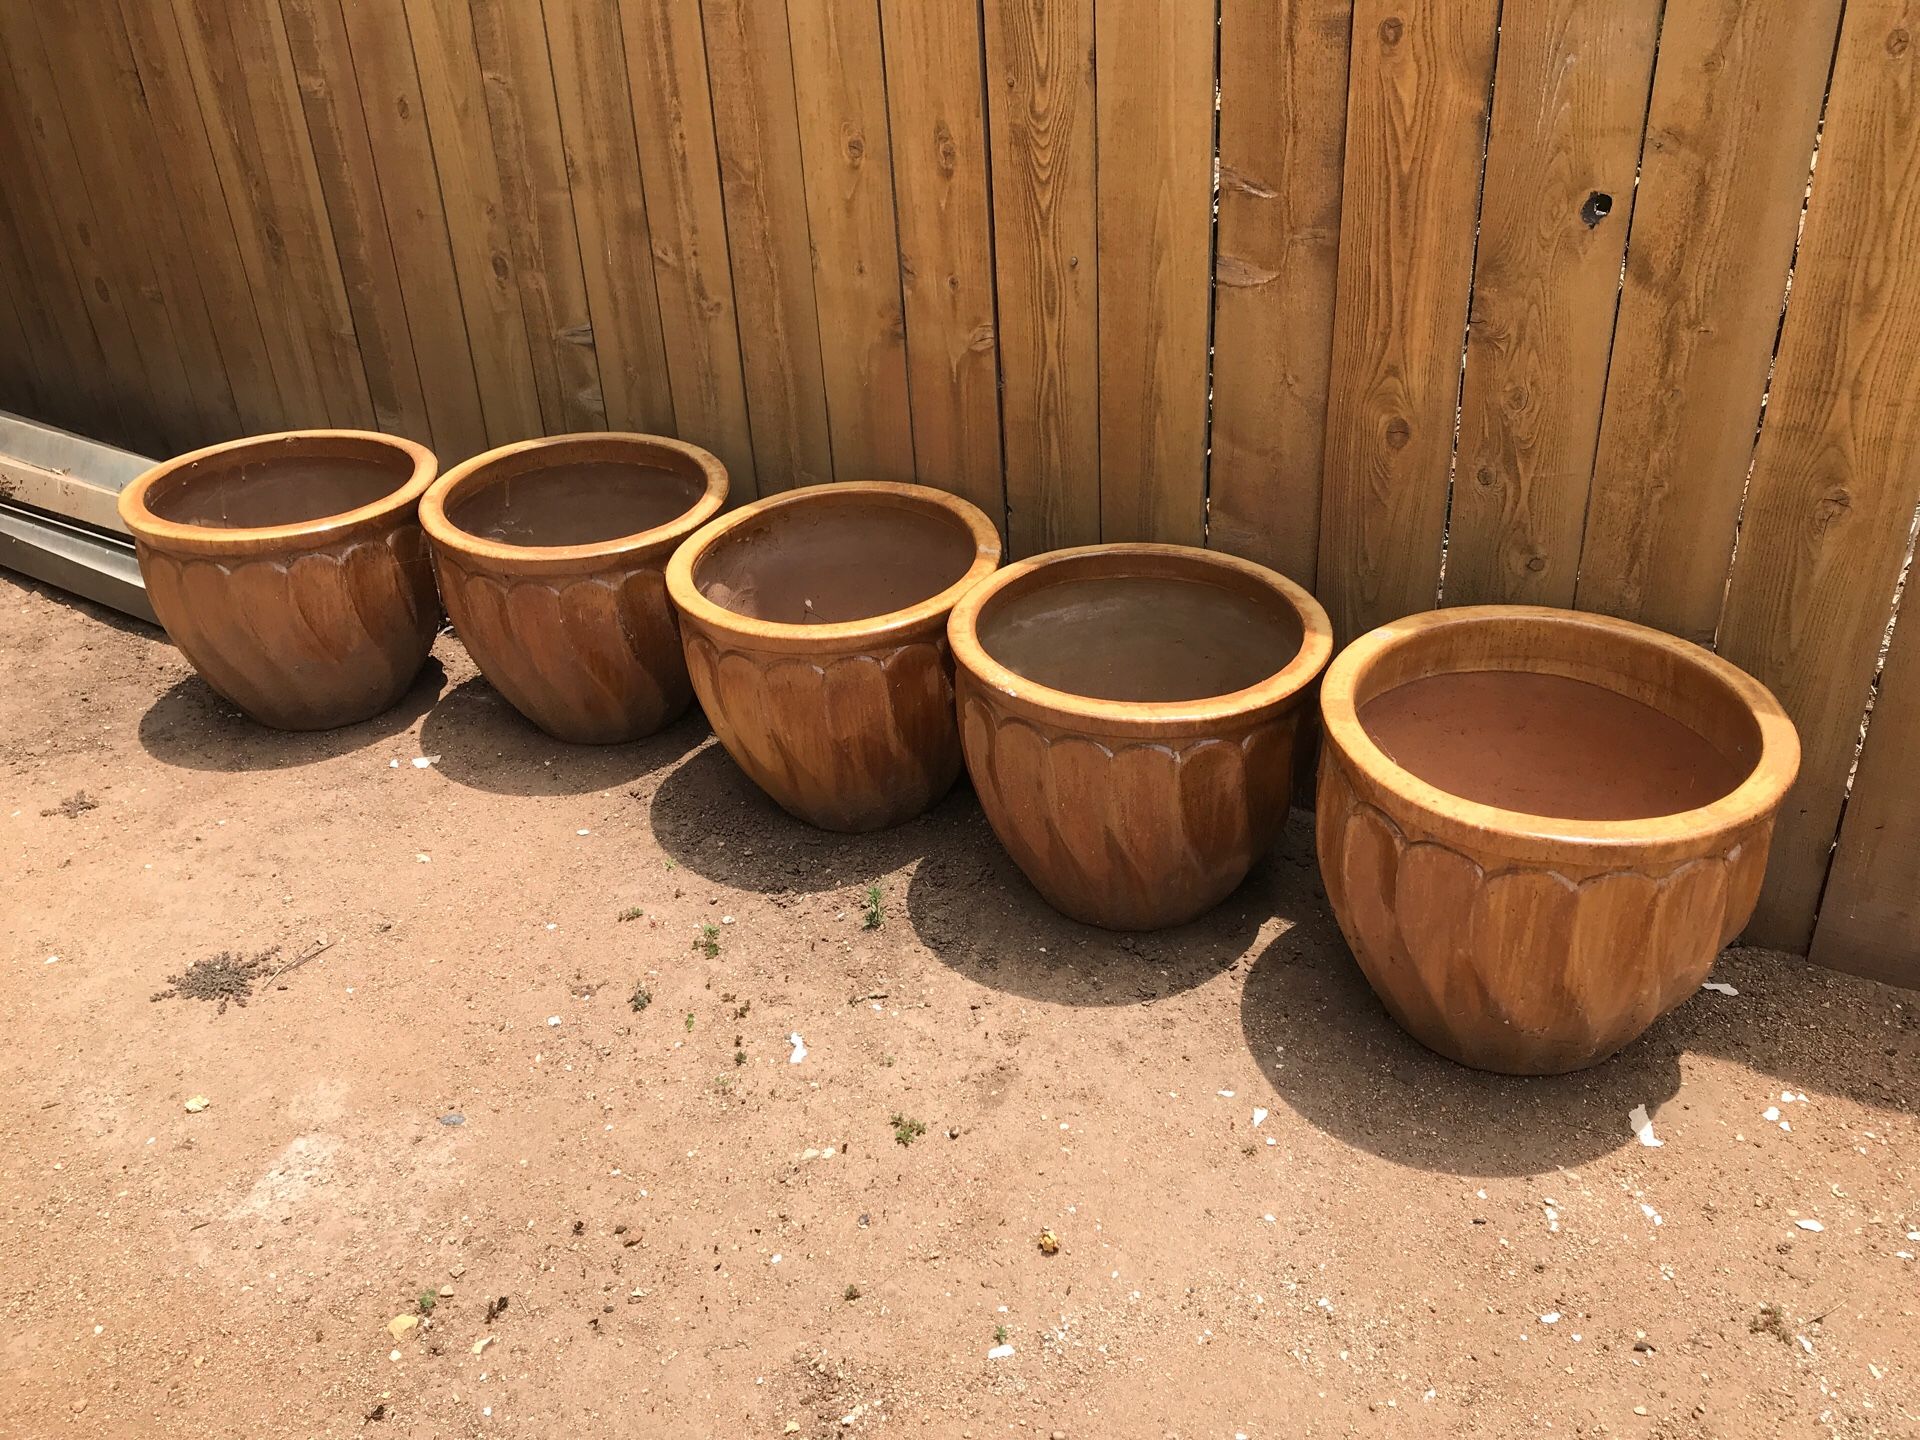 Large pots